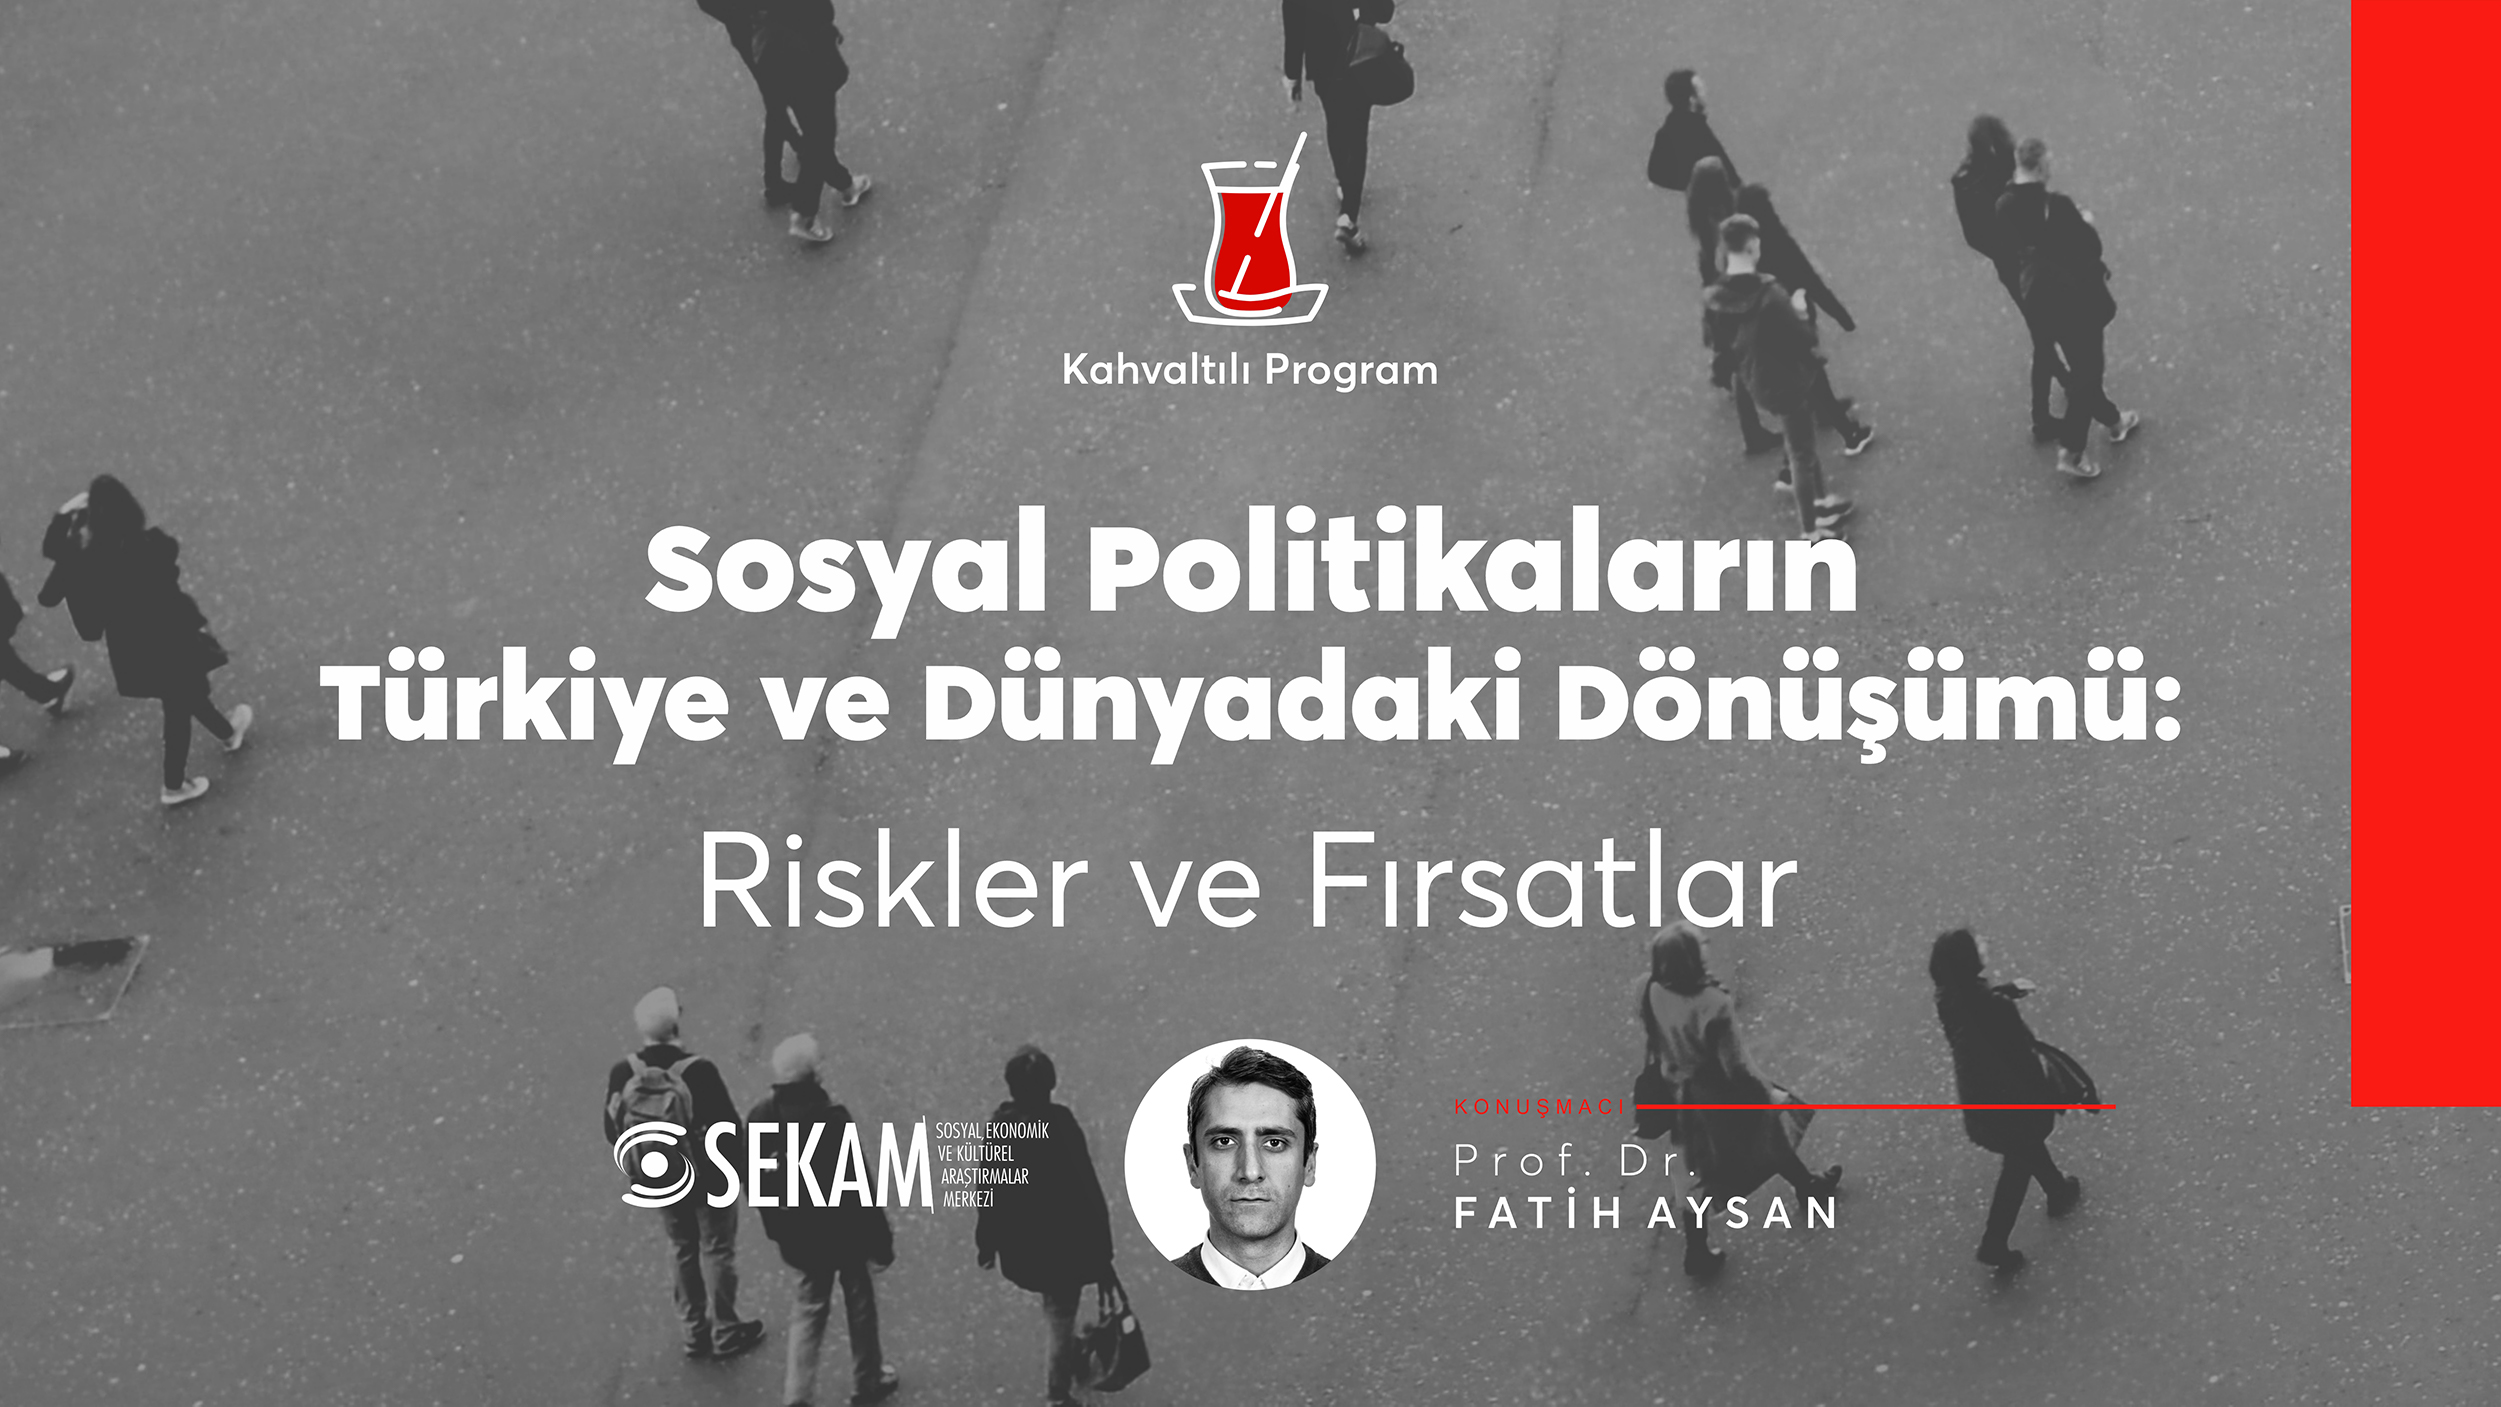 Sosyal Politikaların Türkiye ve Dünyadaki Dönüşümü: Riskler ve Fırsatlar